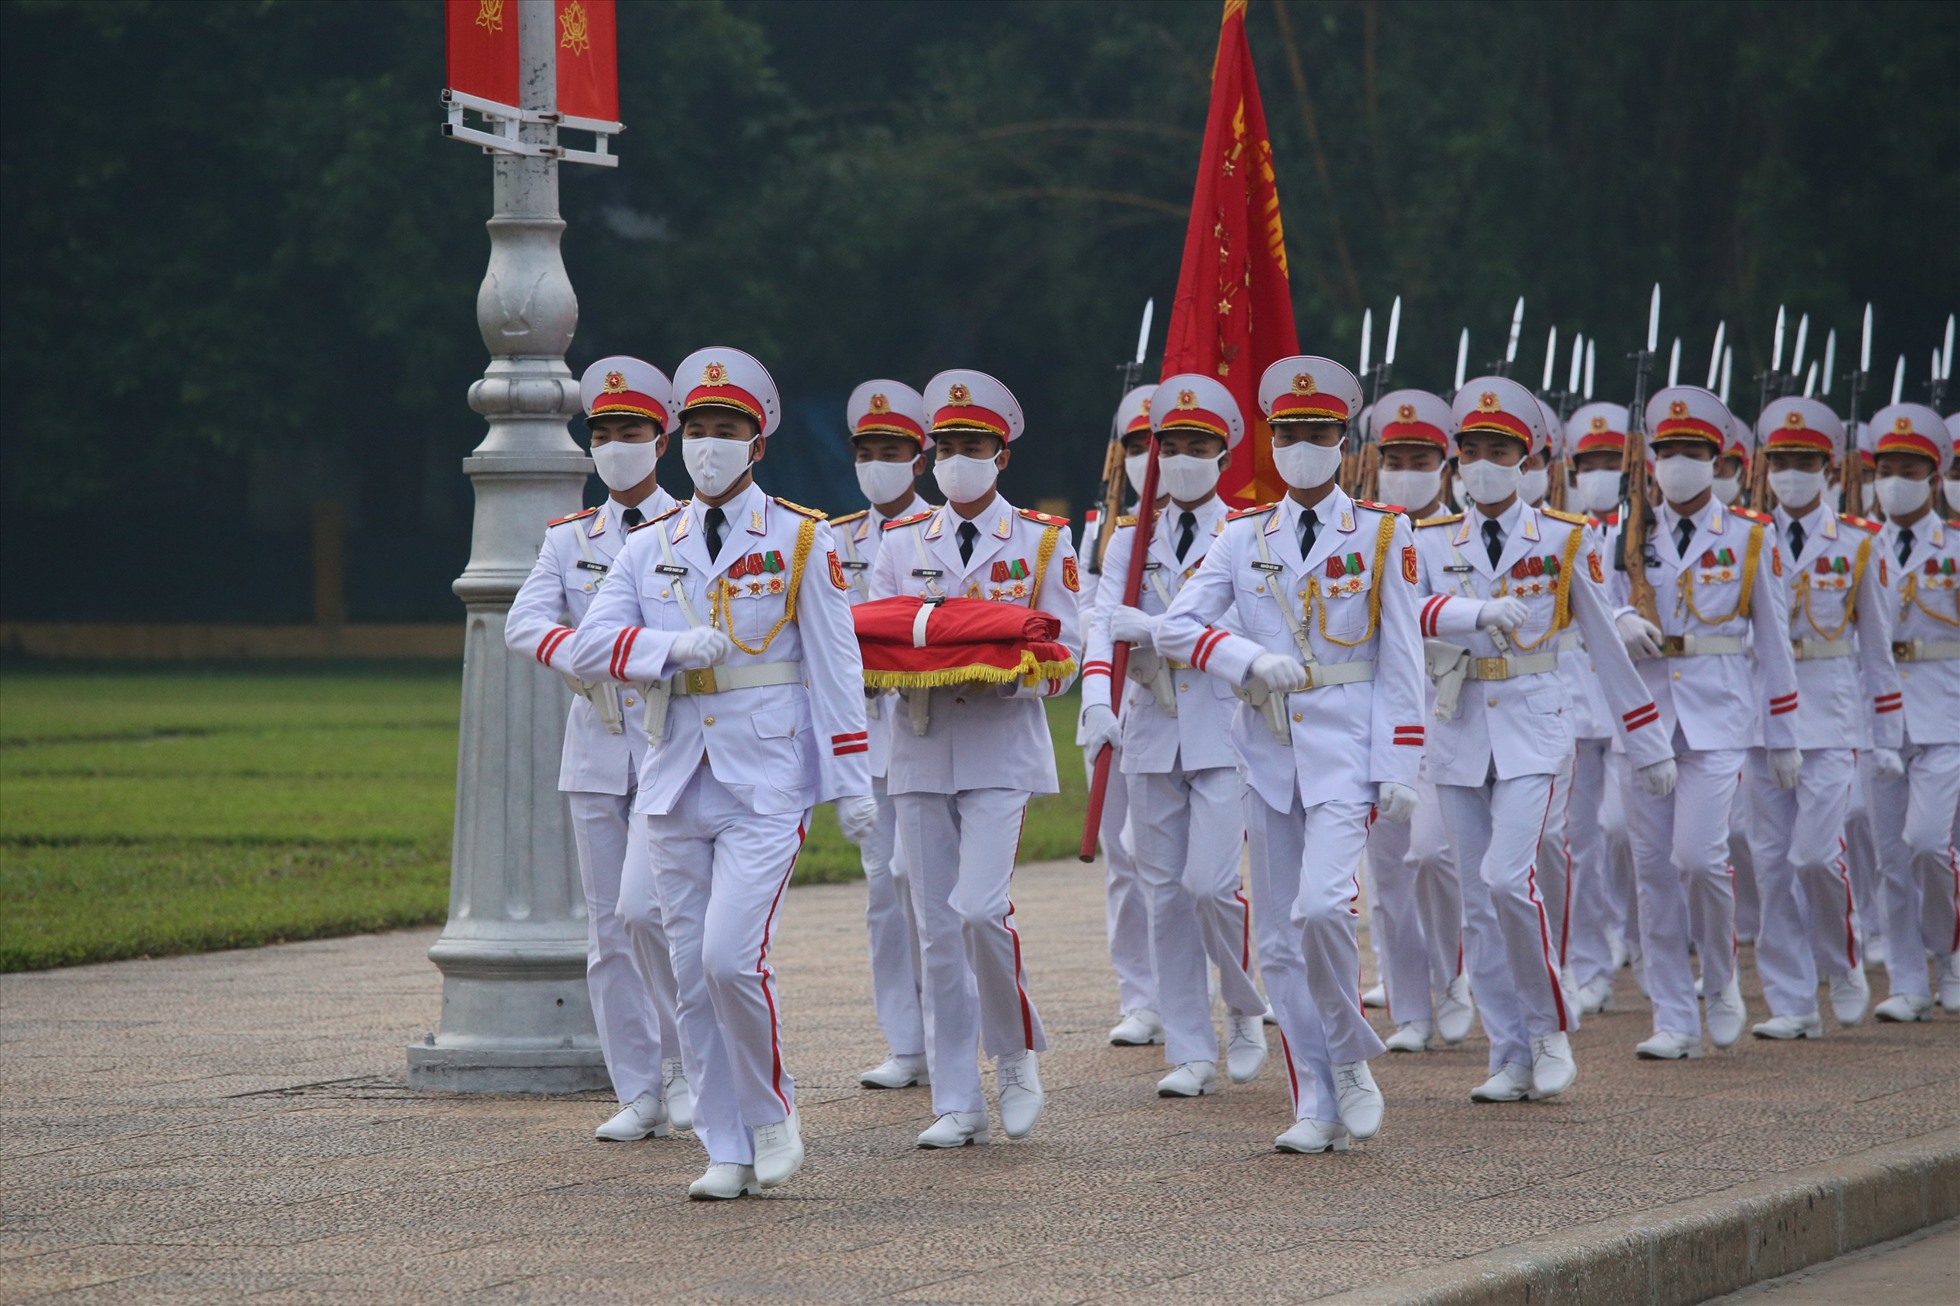 Đội hình thực hiện thường cờ gồm 37 người. Dẫn đầu là quân kỳ quyết thắng, sau đó là 34 chiến sĩ tiêu binh tượng trưng cho 34 chiến sĩ đầu tiên của Đội Việt Nam Tuyên truyền Giải phóng quân mang Quốc kỳ tiến vào khuôn viên Quảng trường Ba Đình.